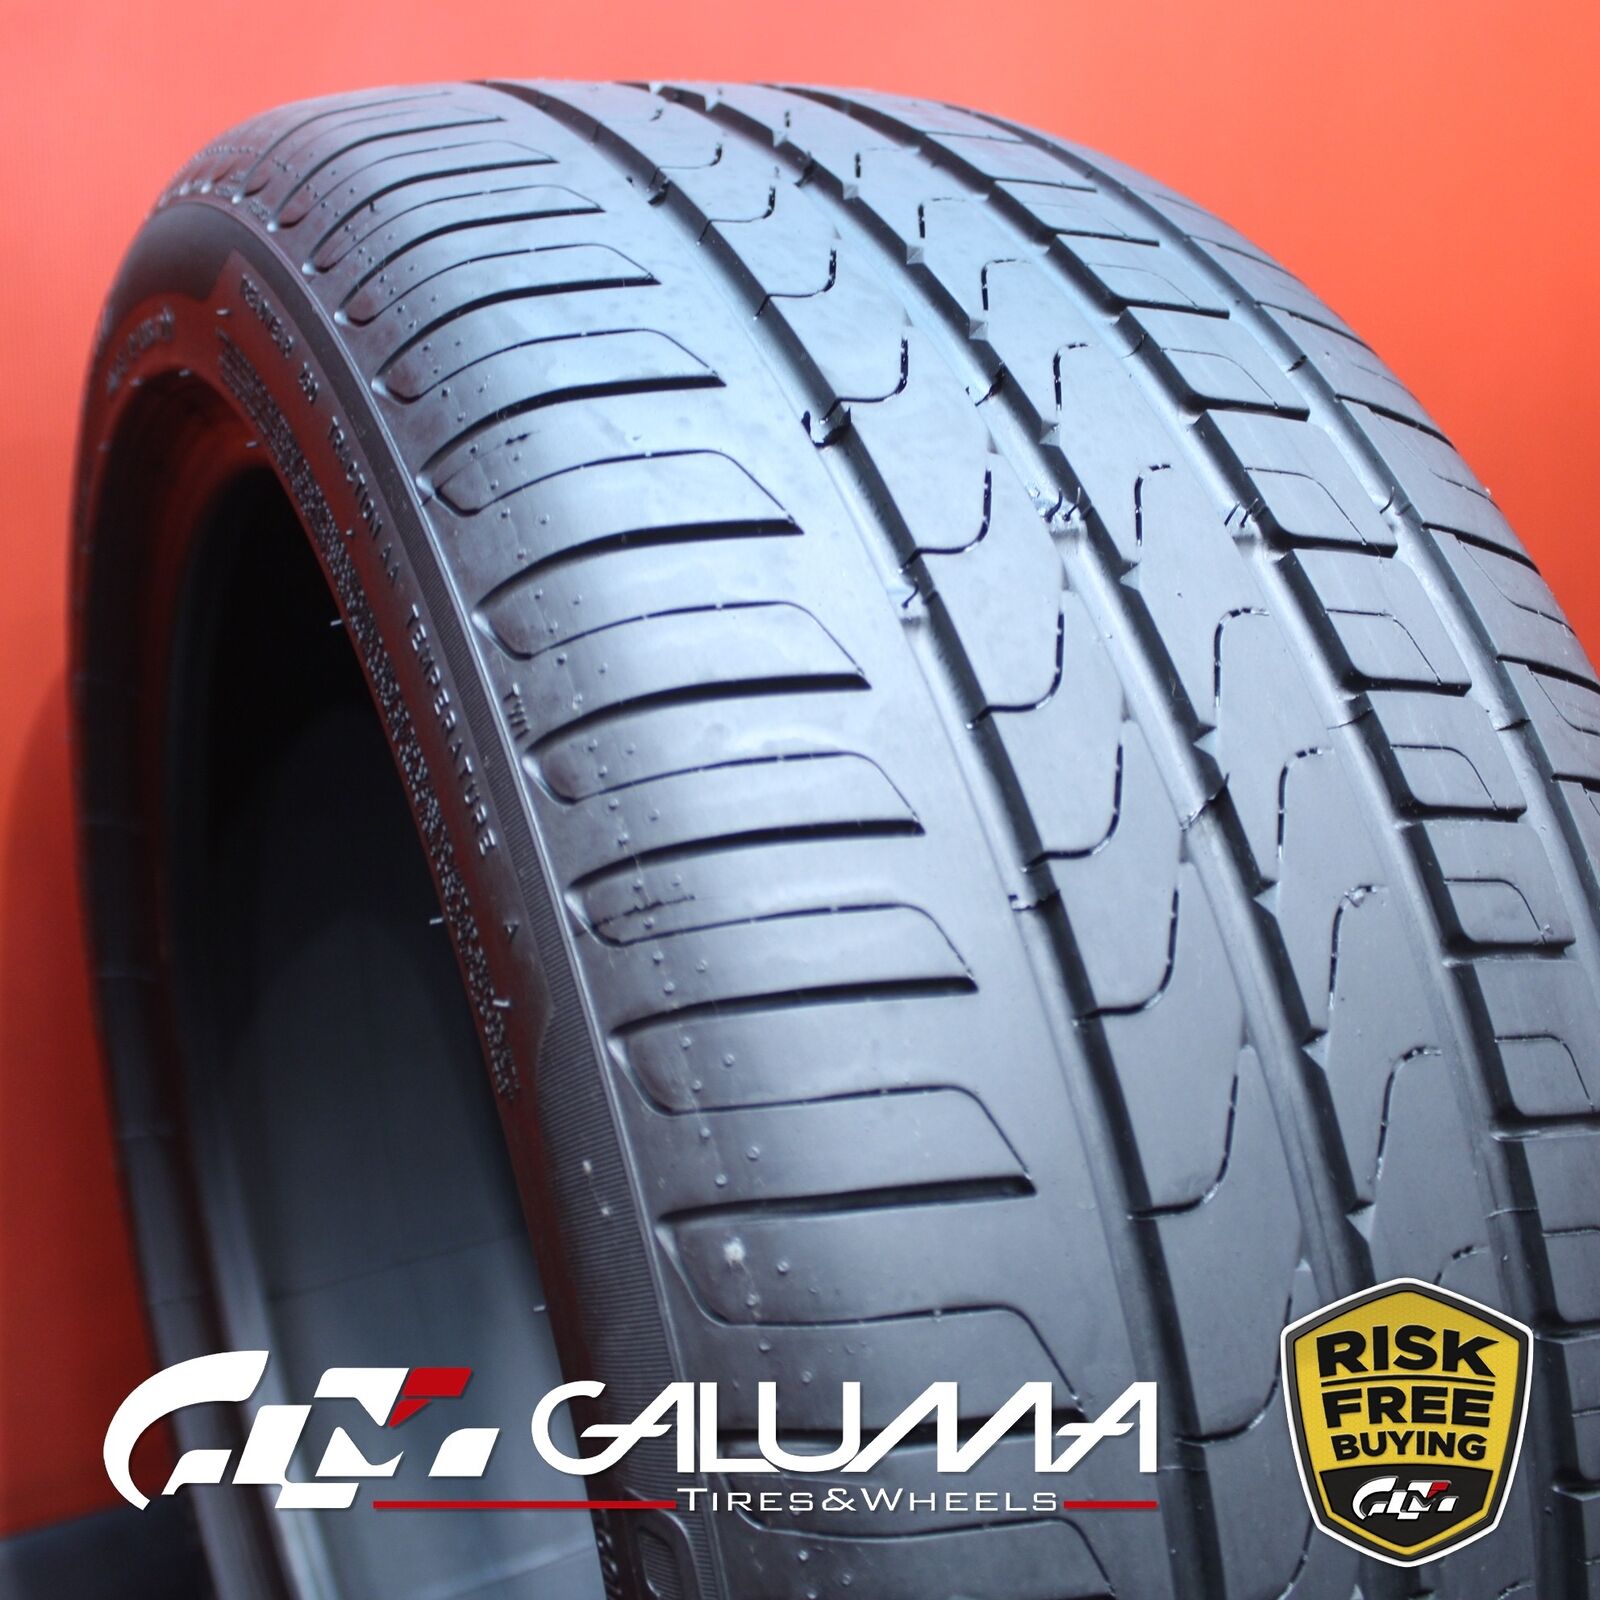 1 (One) Tire Pirelli Cinturato P7 RunFlat 255/40R18 255/40/18 No Patch #78644